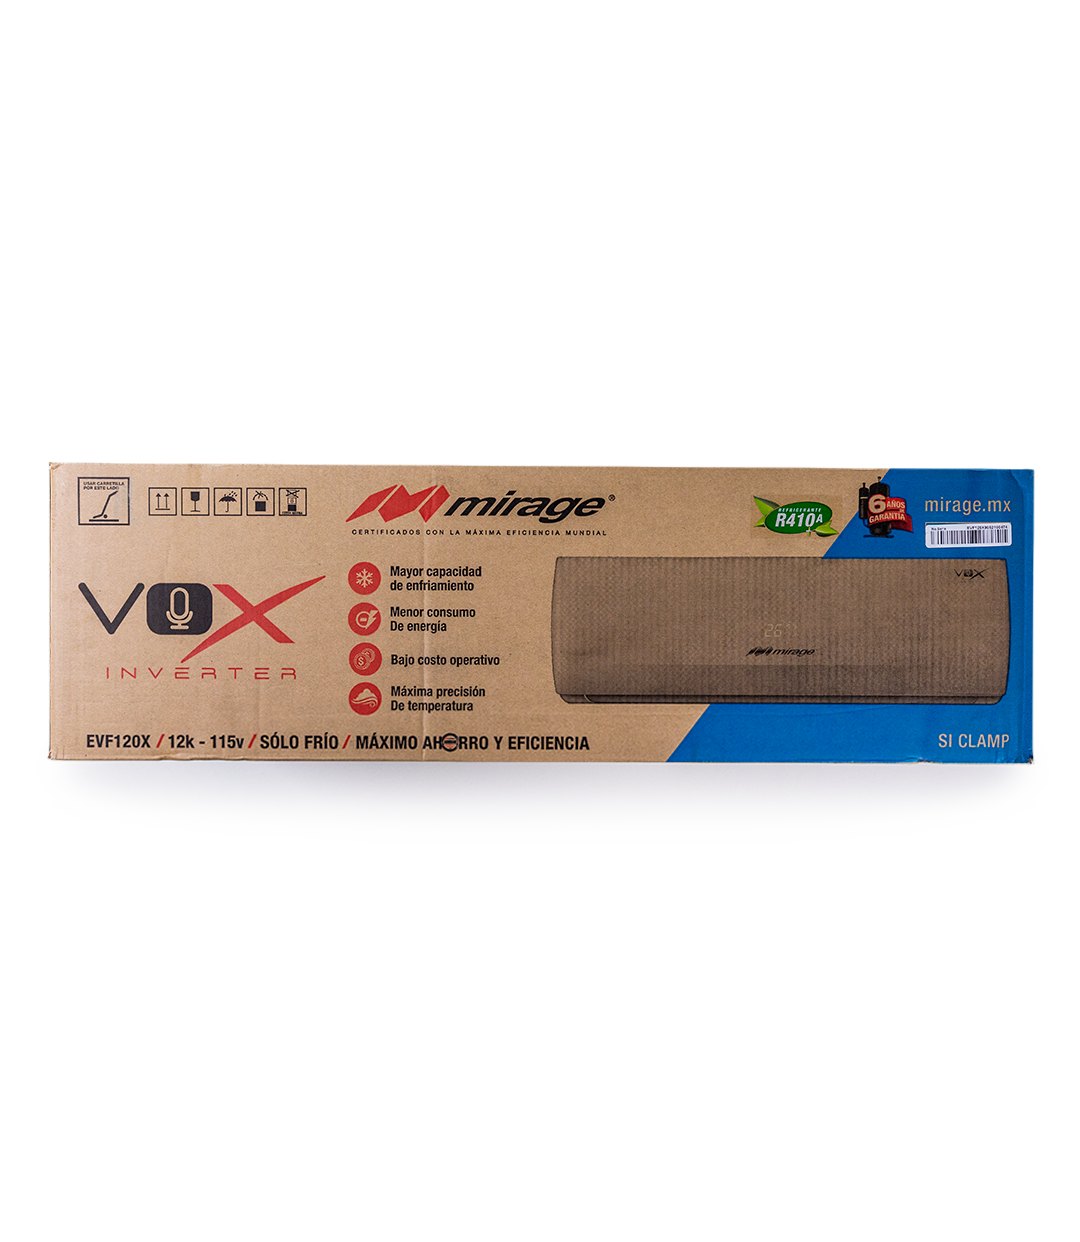 Vox Inverter CVF120X 110v 1 Tonelada